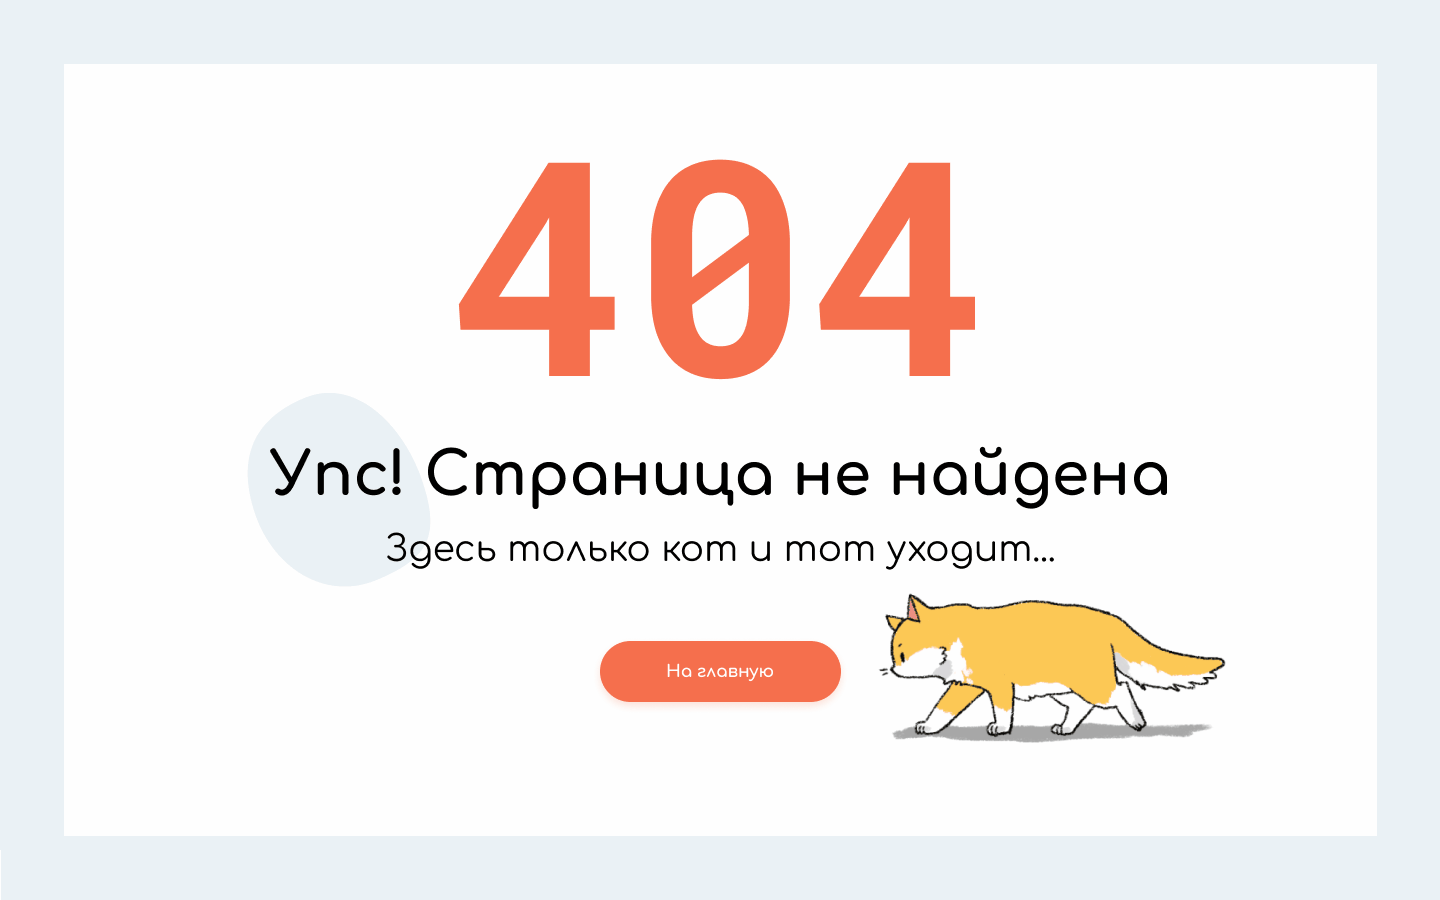 Error 404 page/Not found